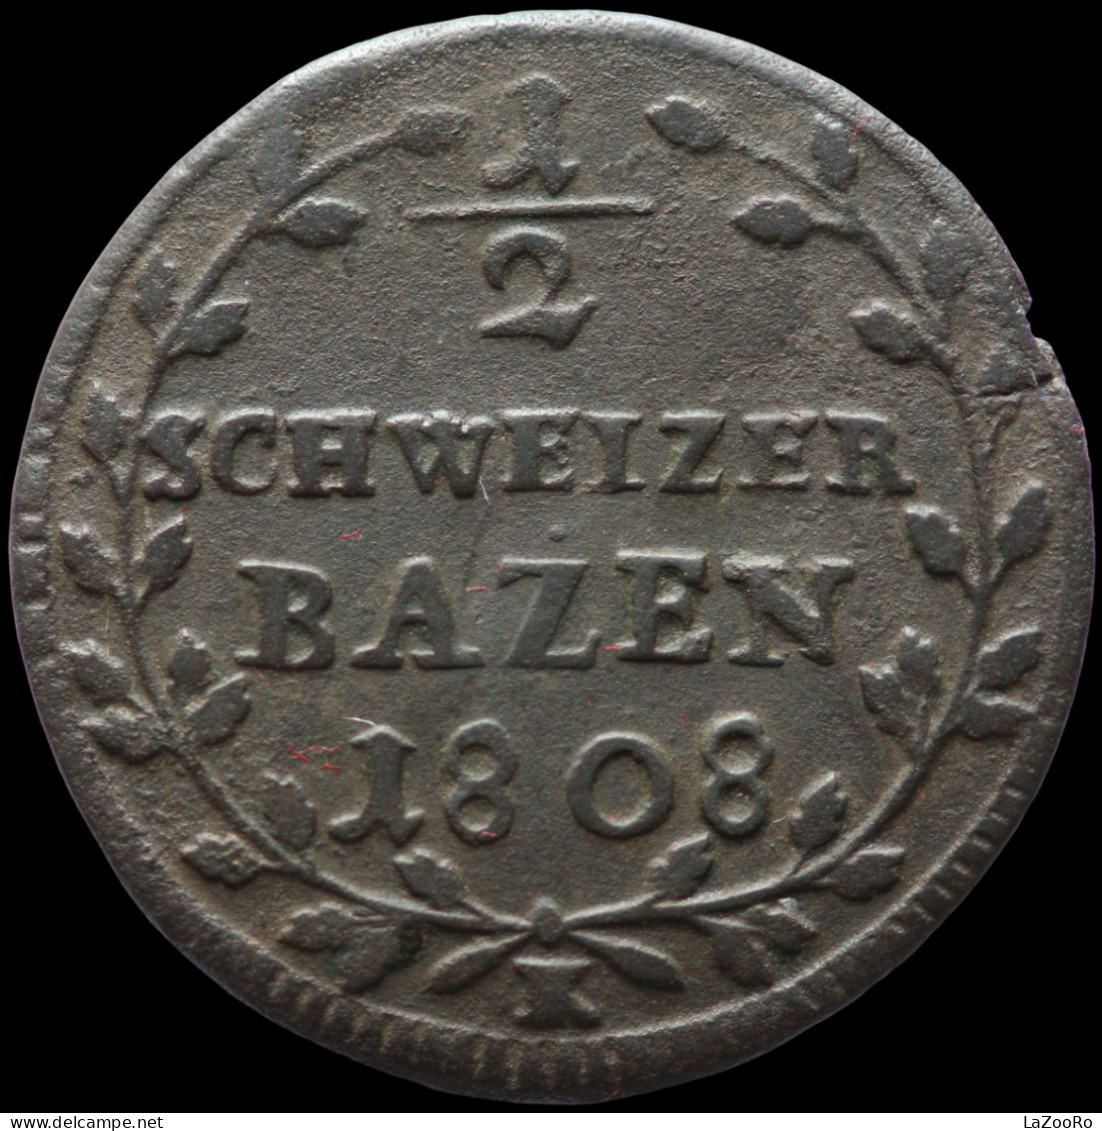 LaZooRo: Switzerland SAINT GALL 1/2 Batzen 1808 VF - Silver - Monedas Cantonales